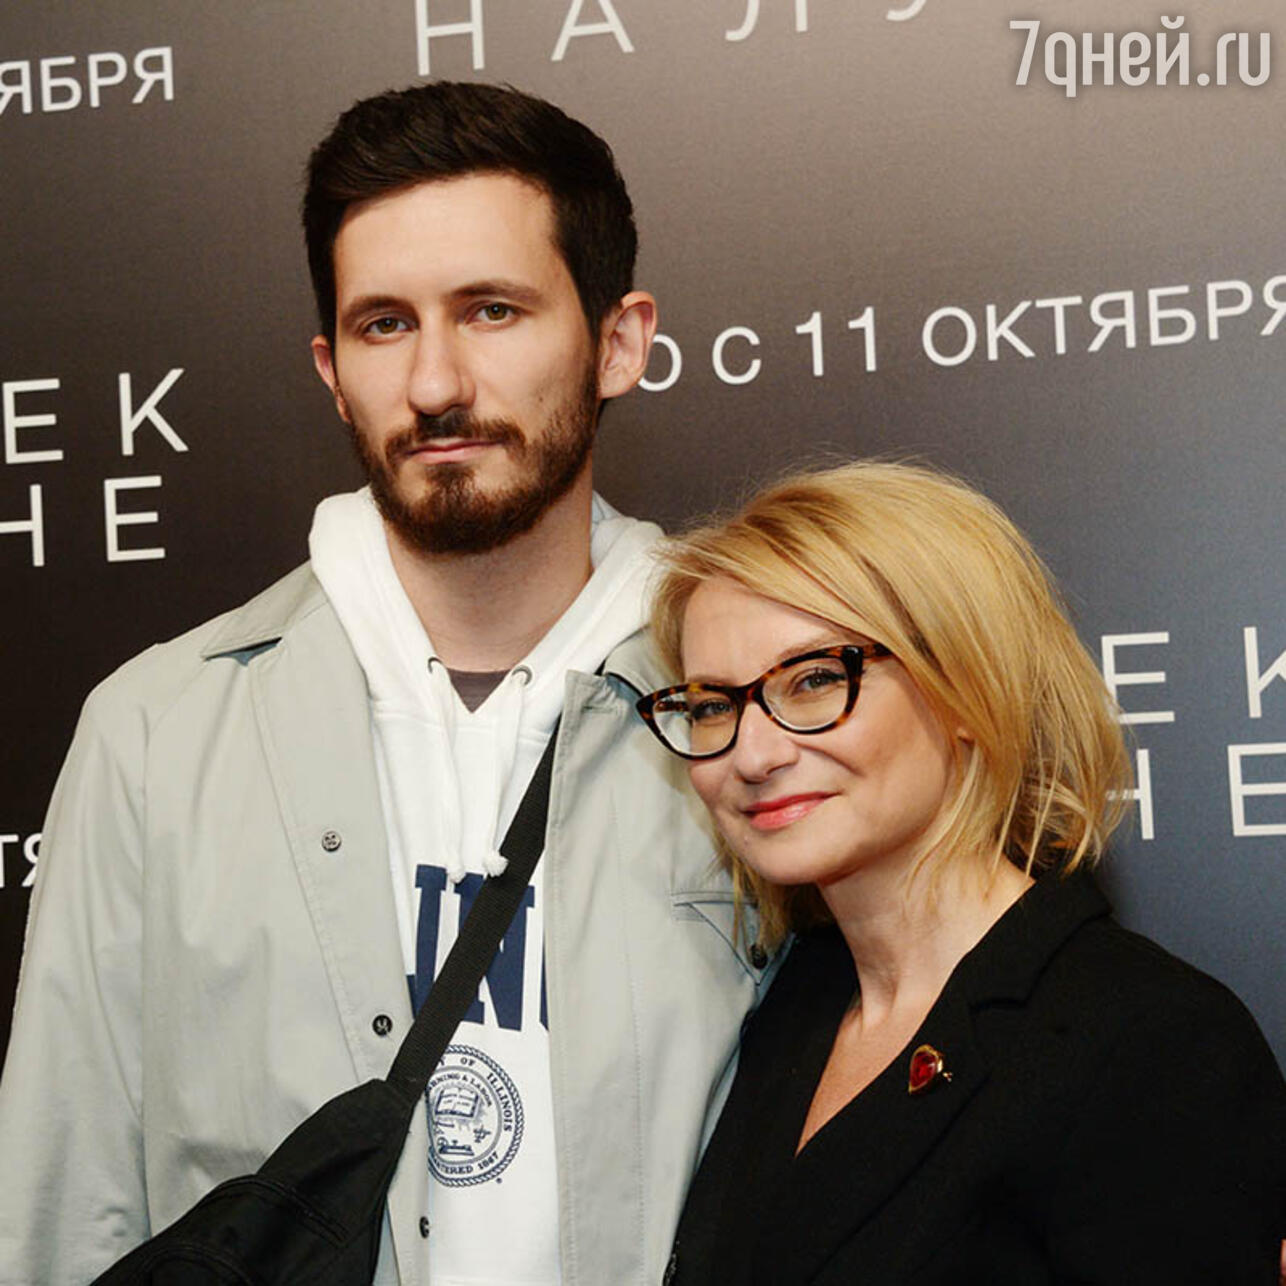 Эвелина Хромченко с сыном Артемием